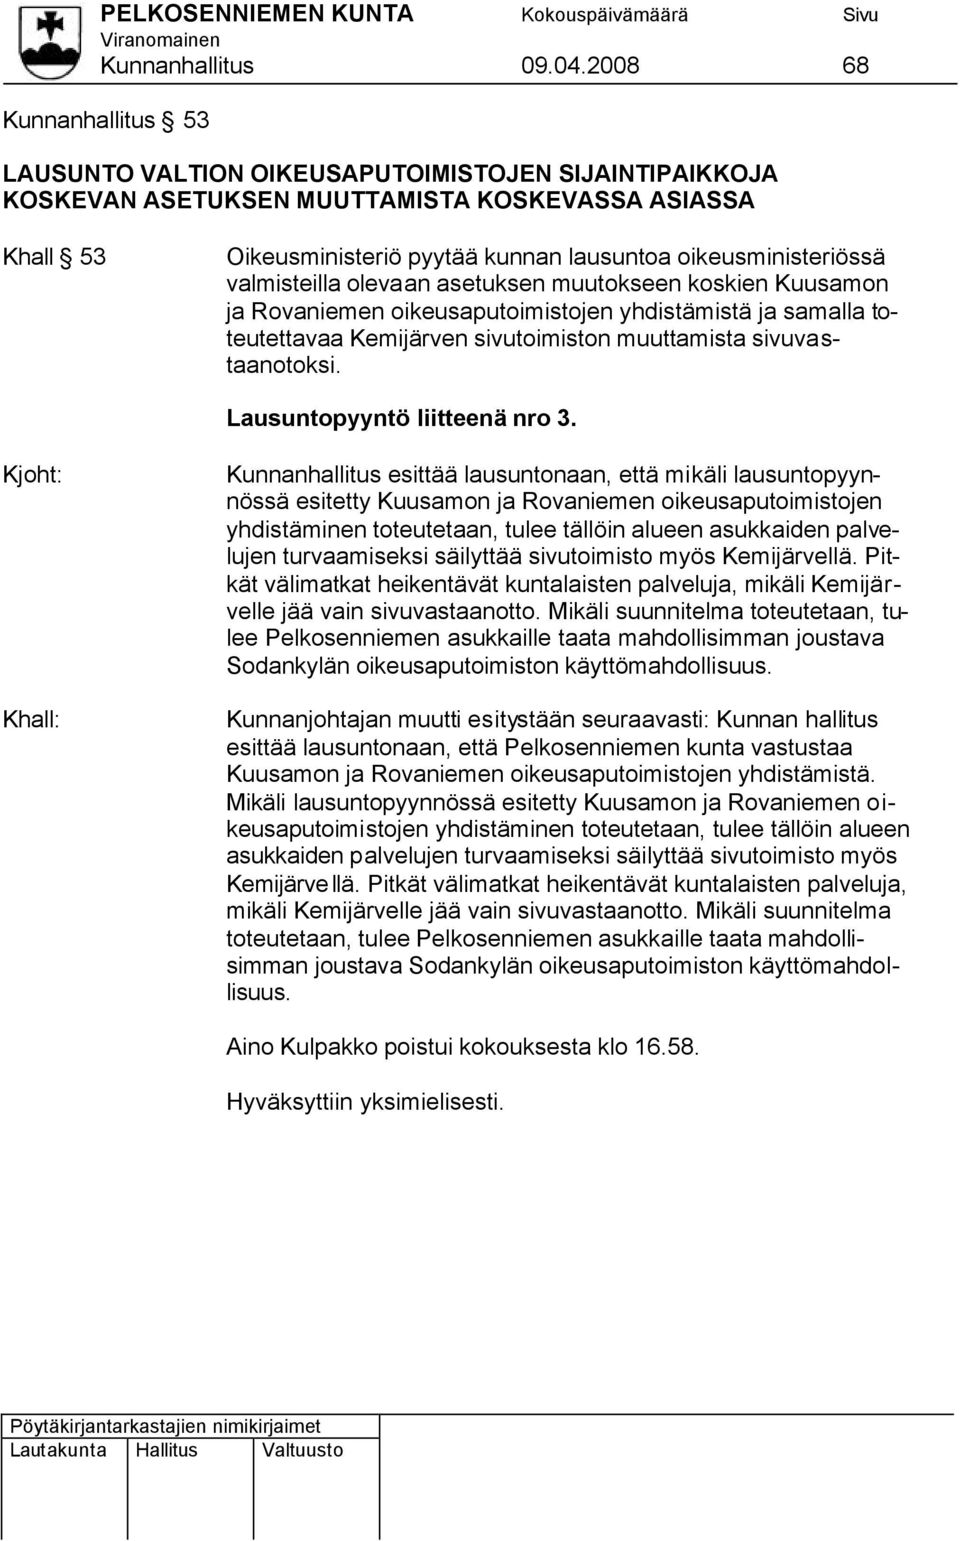 oikeusministeriössä valmisteilla olevaan asetuksen muutokseen koskien Kuusamon ja Rovaniemen oikeusaputoimistojen yhdistämistä ja samalla toteutettavaa Kemijärven sivutoimiston muuttamista